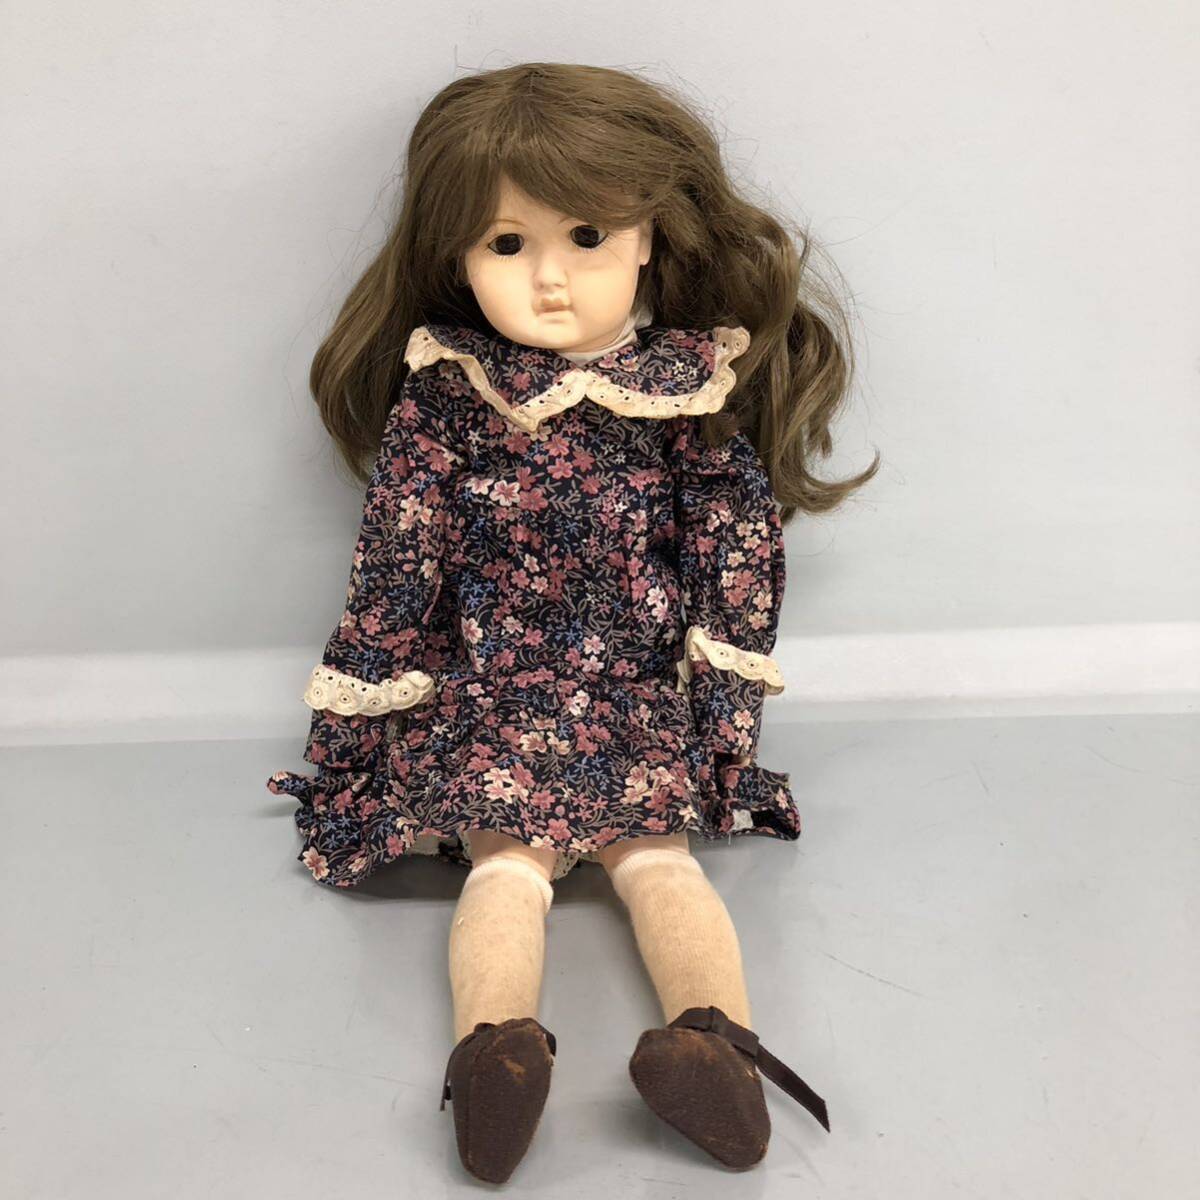 H■ Collector’s Doll コレクターズドール CD-3 女の子 人形 ドール 全長48cm 西洋人形 関節可動 樹脂製 日本製 ビスクドール 外箱付き の画像2